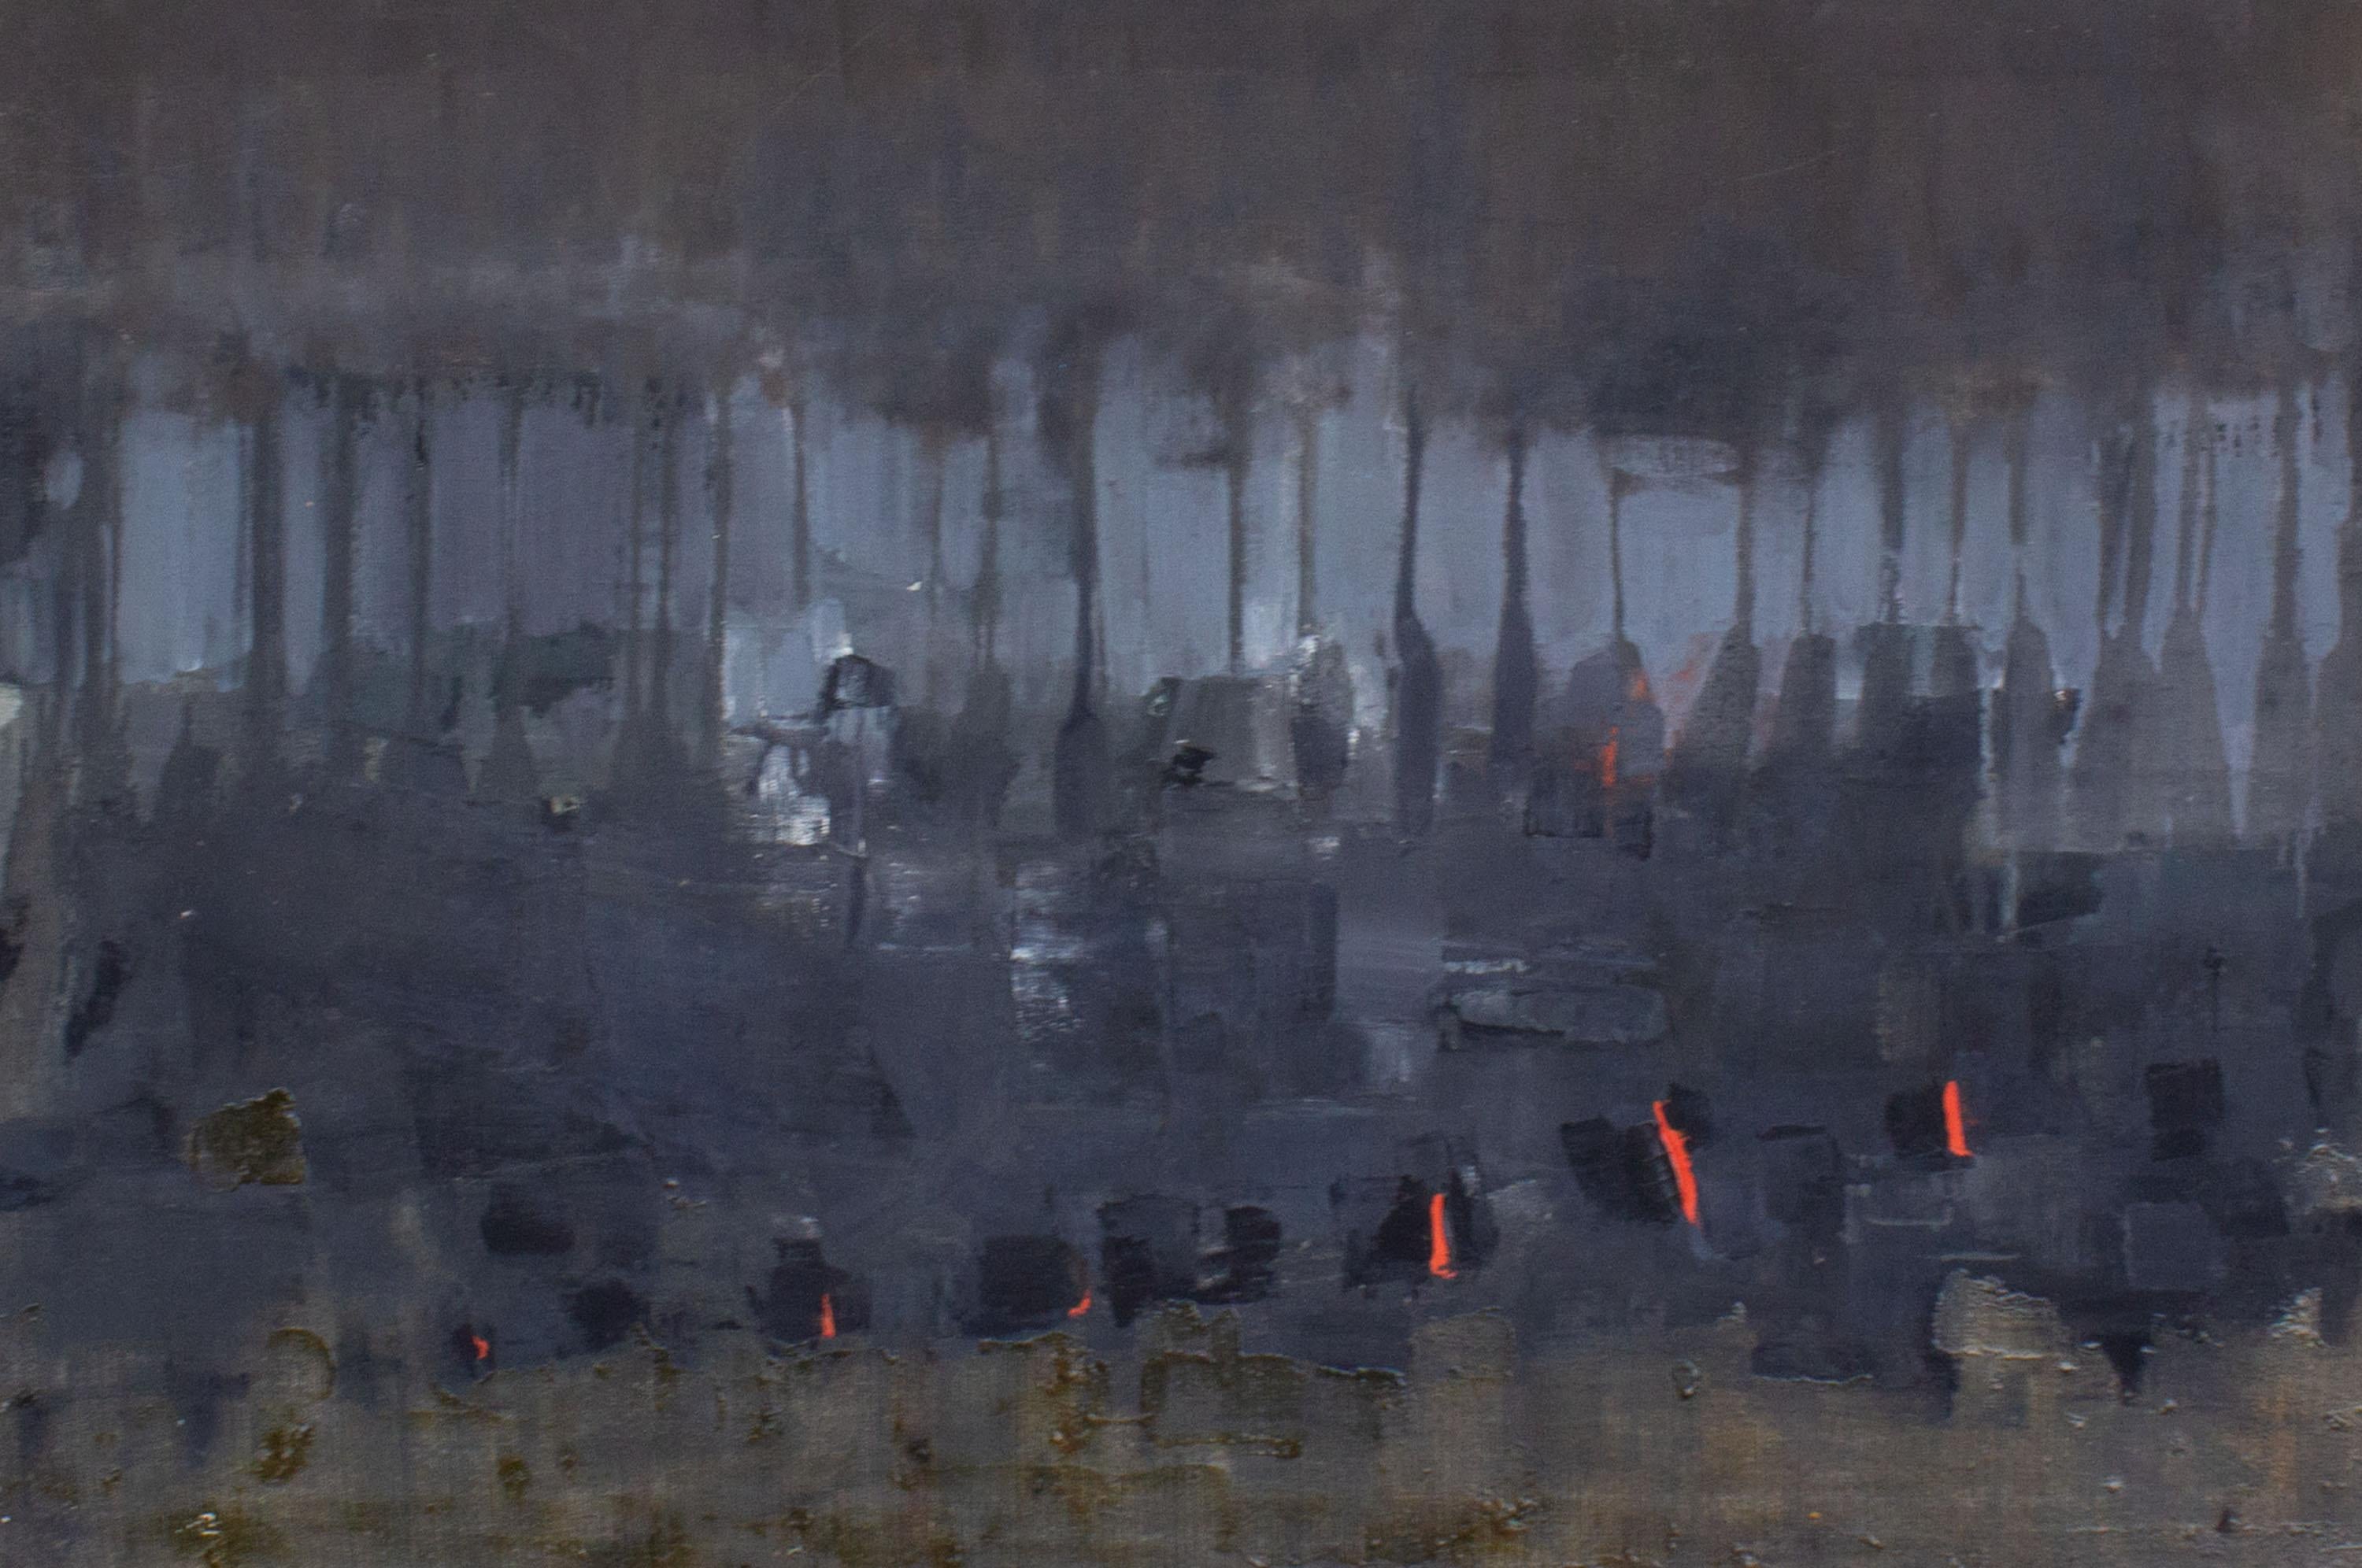 Ein abstraktes Ölgemälde auf Leinwand aus den 1960er Jahren der amerikanischen Künstlerin Reiko Sakagami Baume (1927-2021). Das stimmungsvolle Gemälde zeigt horizontale Farbschichten, die sich zu einem abstrakten Muster vermischen und tropfen. Durch